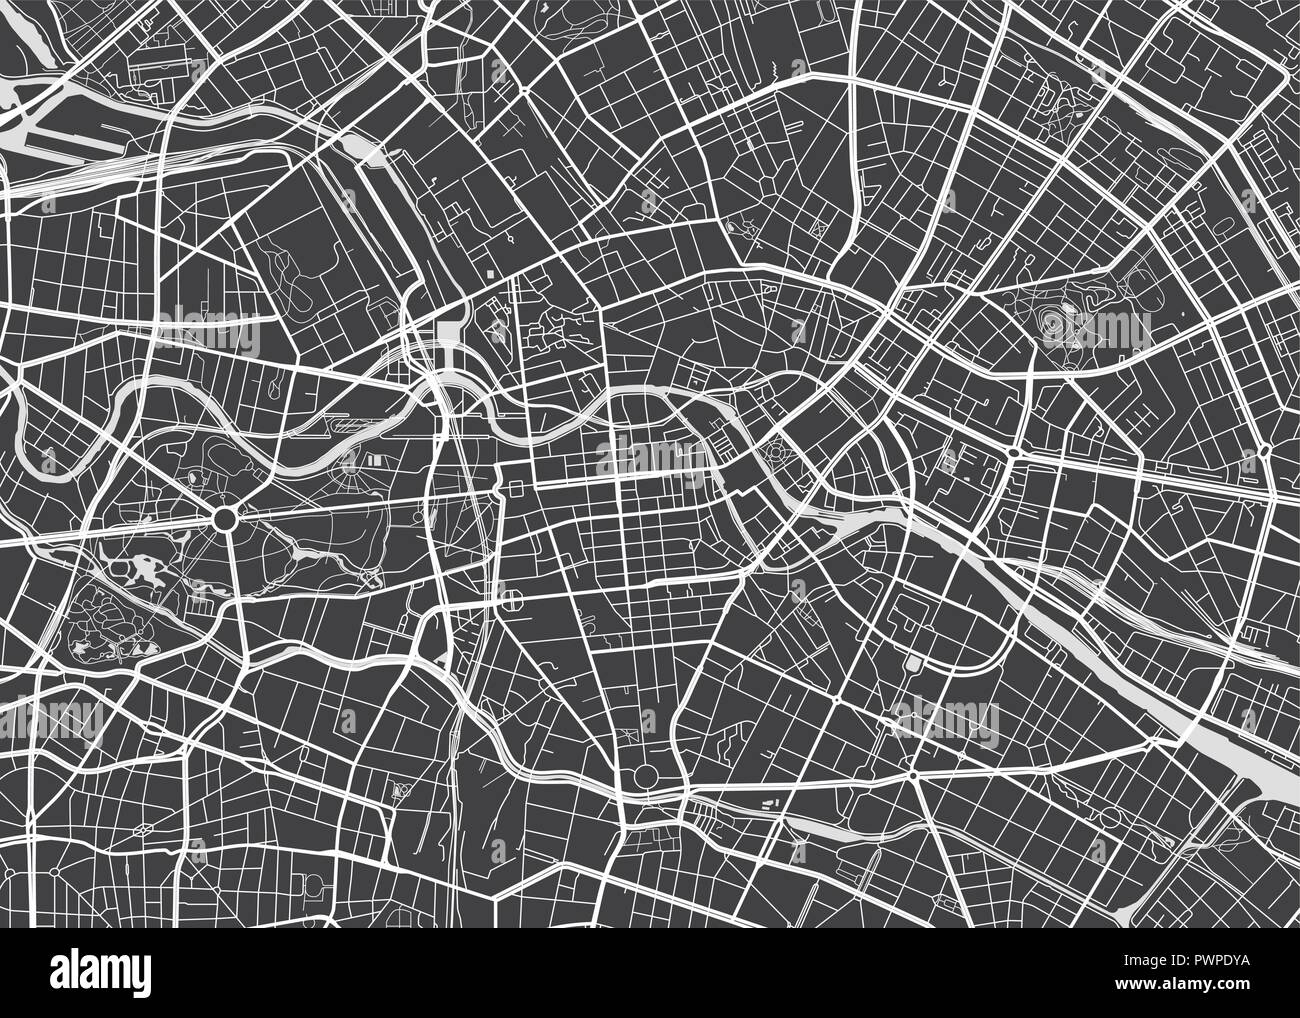 Vektor detaillierte Karte Berlin detaillierten Plan der Stadt, Flüsse und Straßen Stock Vektor